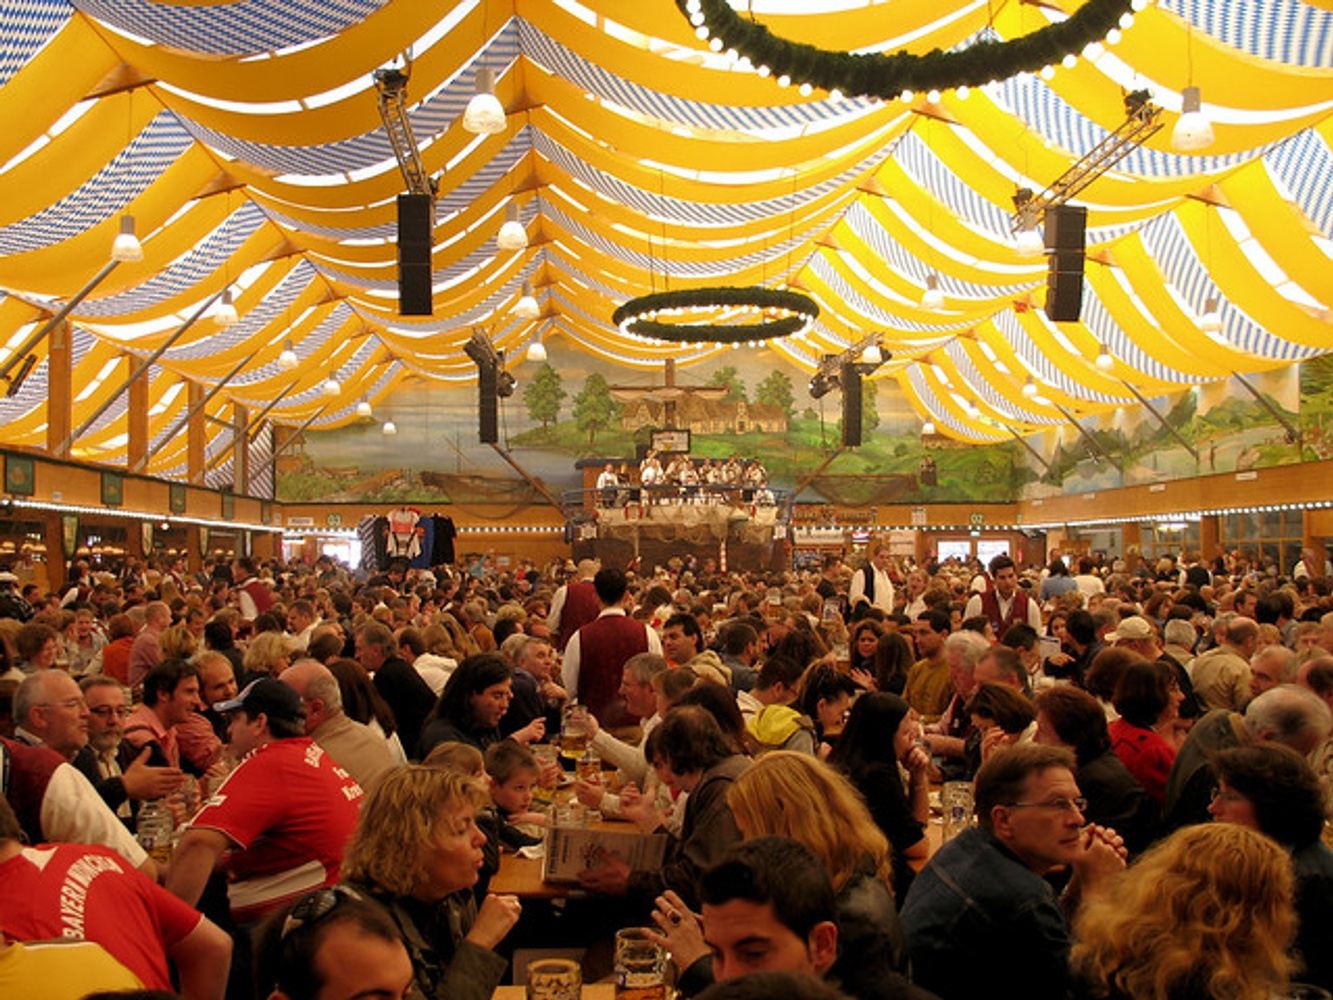 Munich's Oktoberfest! 2 Spots Left!